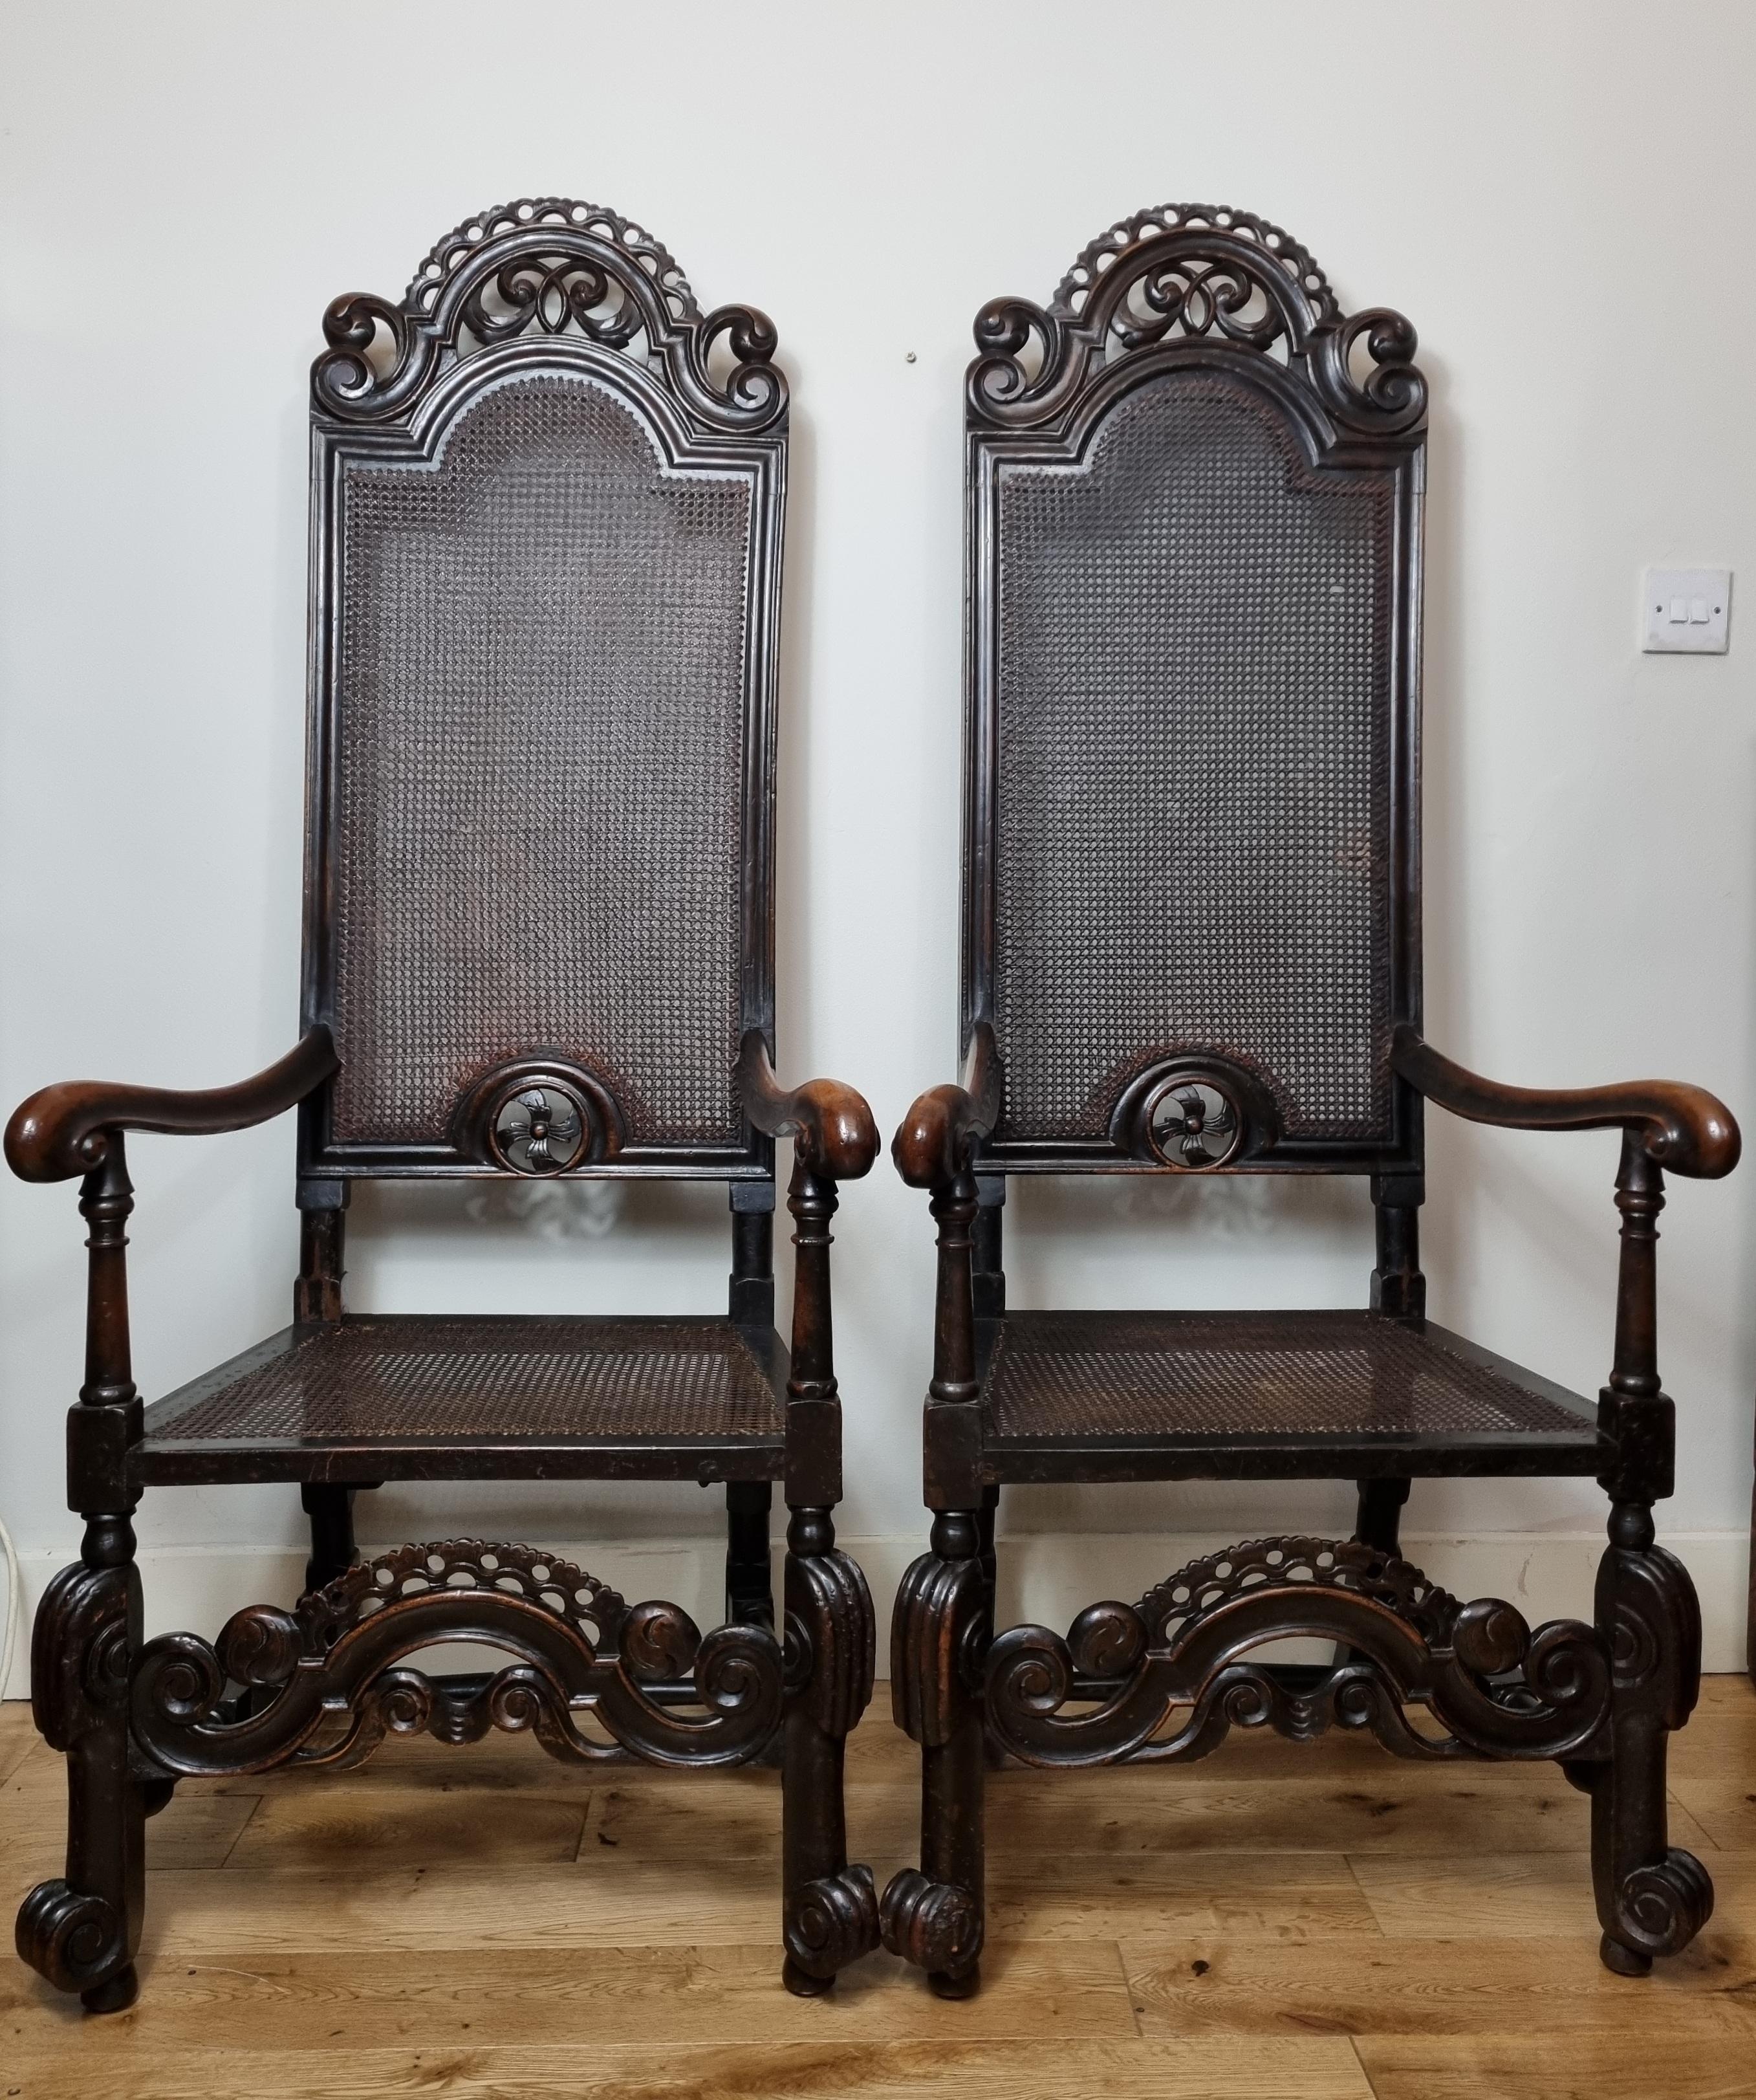 Une paire exceptionnellement rare de fauteuils William et Mary en noyer sculpté, datant de la fin du 17ème siècle 1690. Merveilleuse couleur avec une patine d'origine riche et profonde. La barre de dossier à volutes, le dossier et l'assise cannelés,